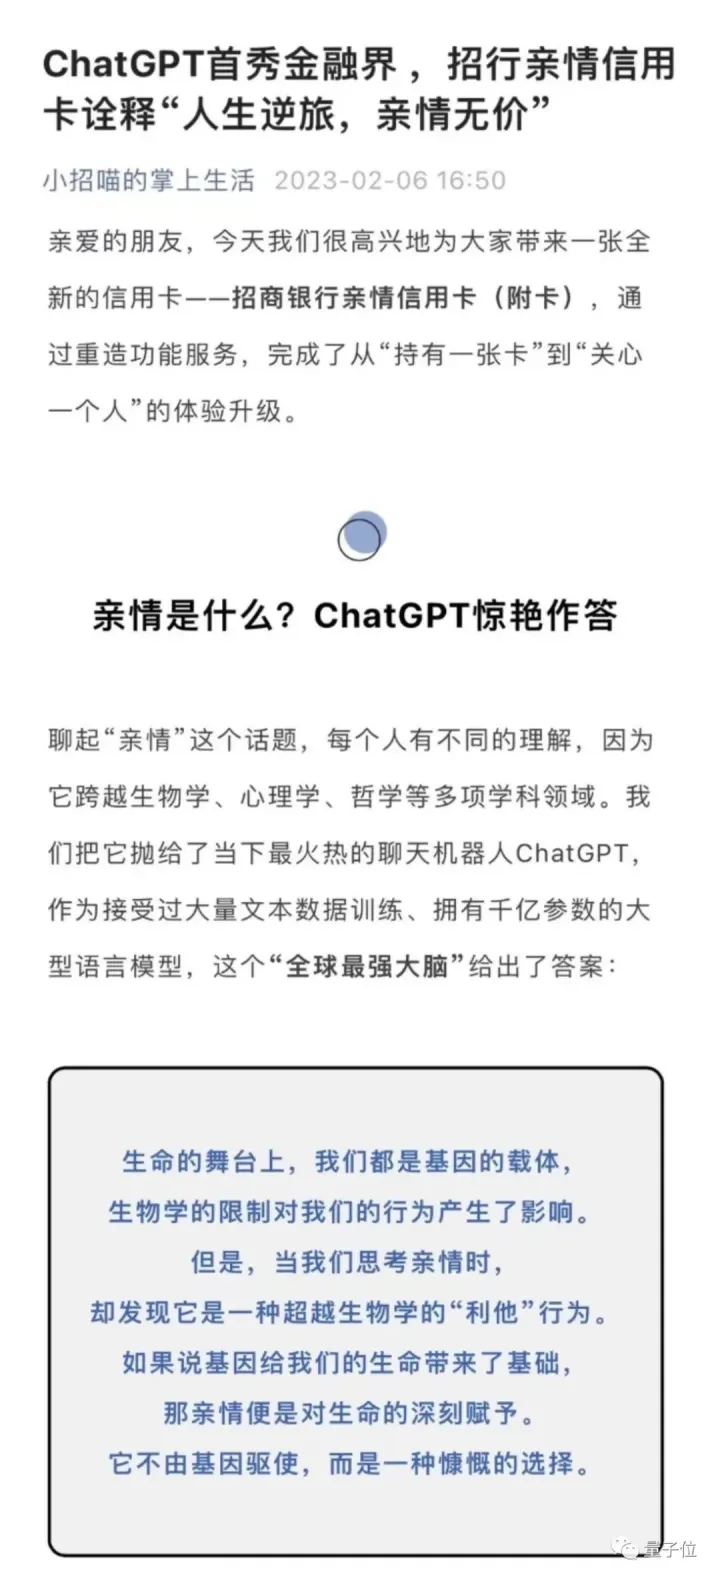 来了，ChatGPT开始在金融圈抢活